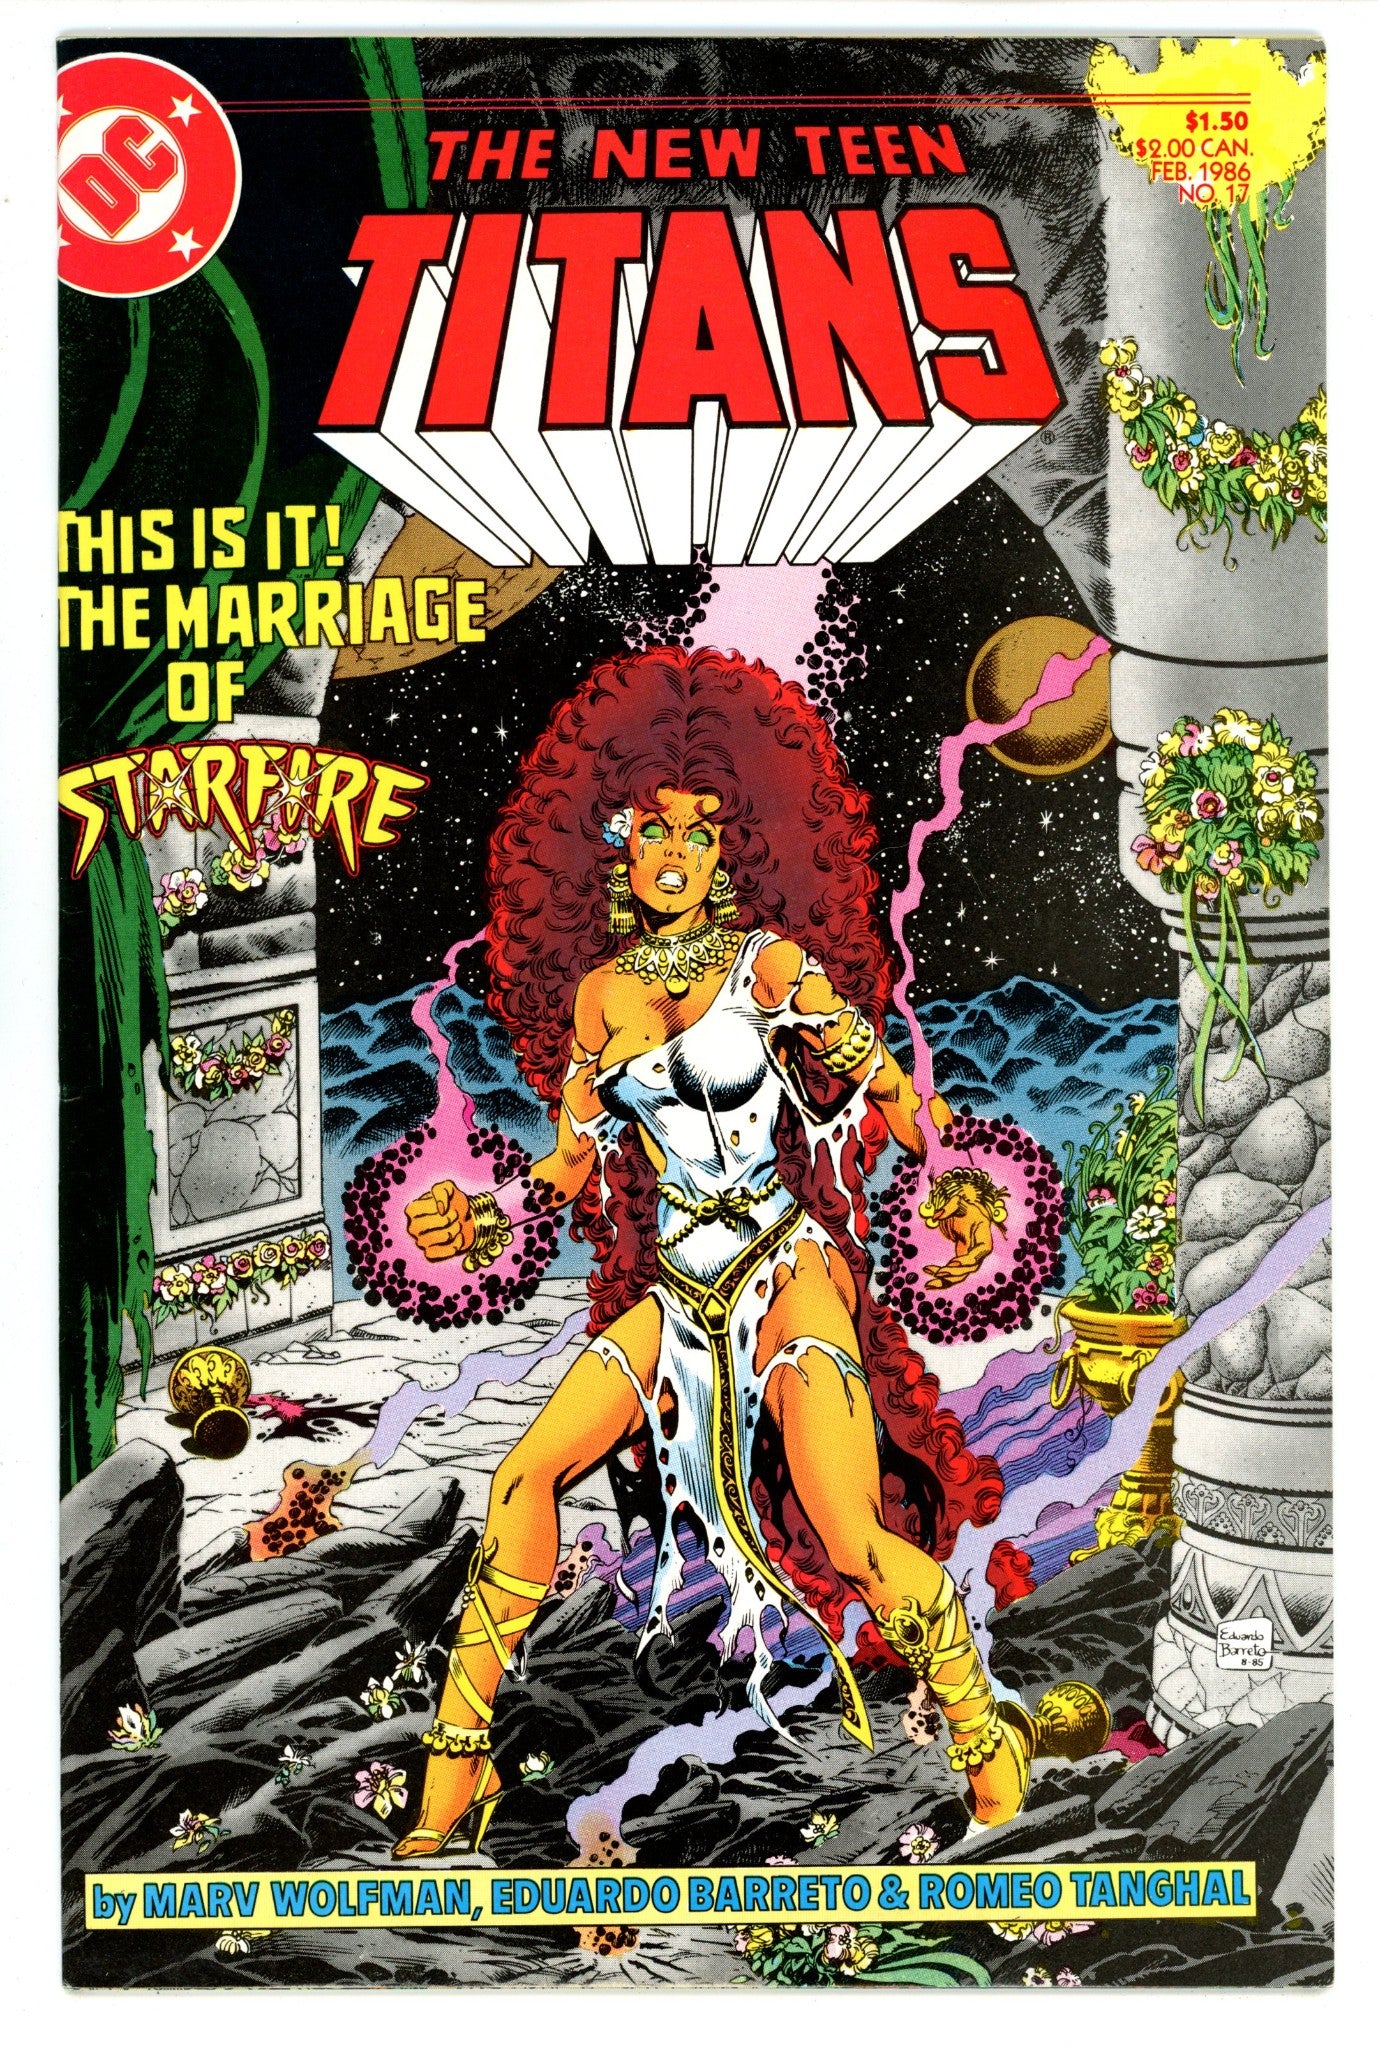 The New Teen Titans Vol 2 17 High Grade (1986) 